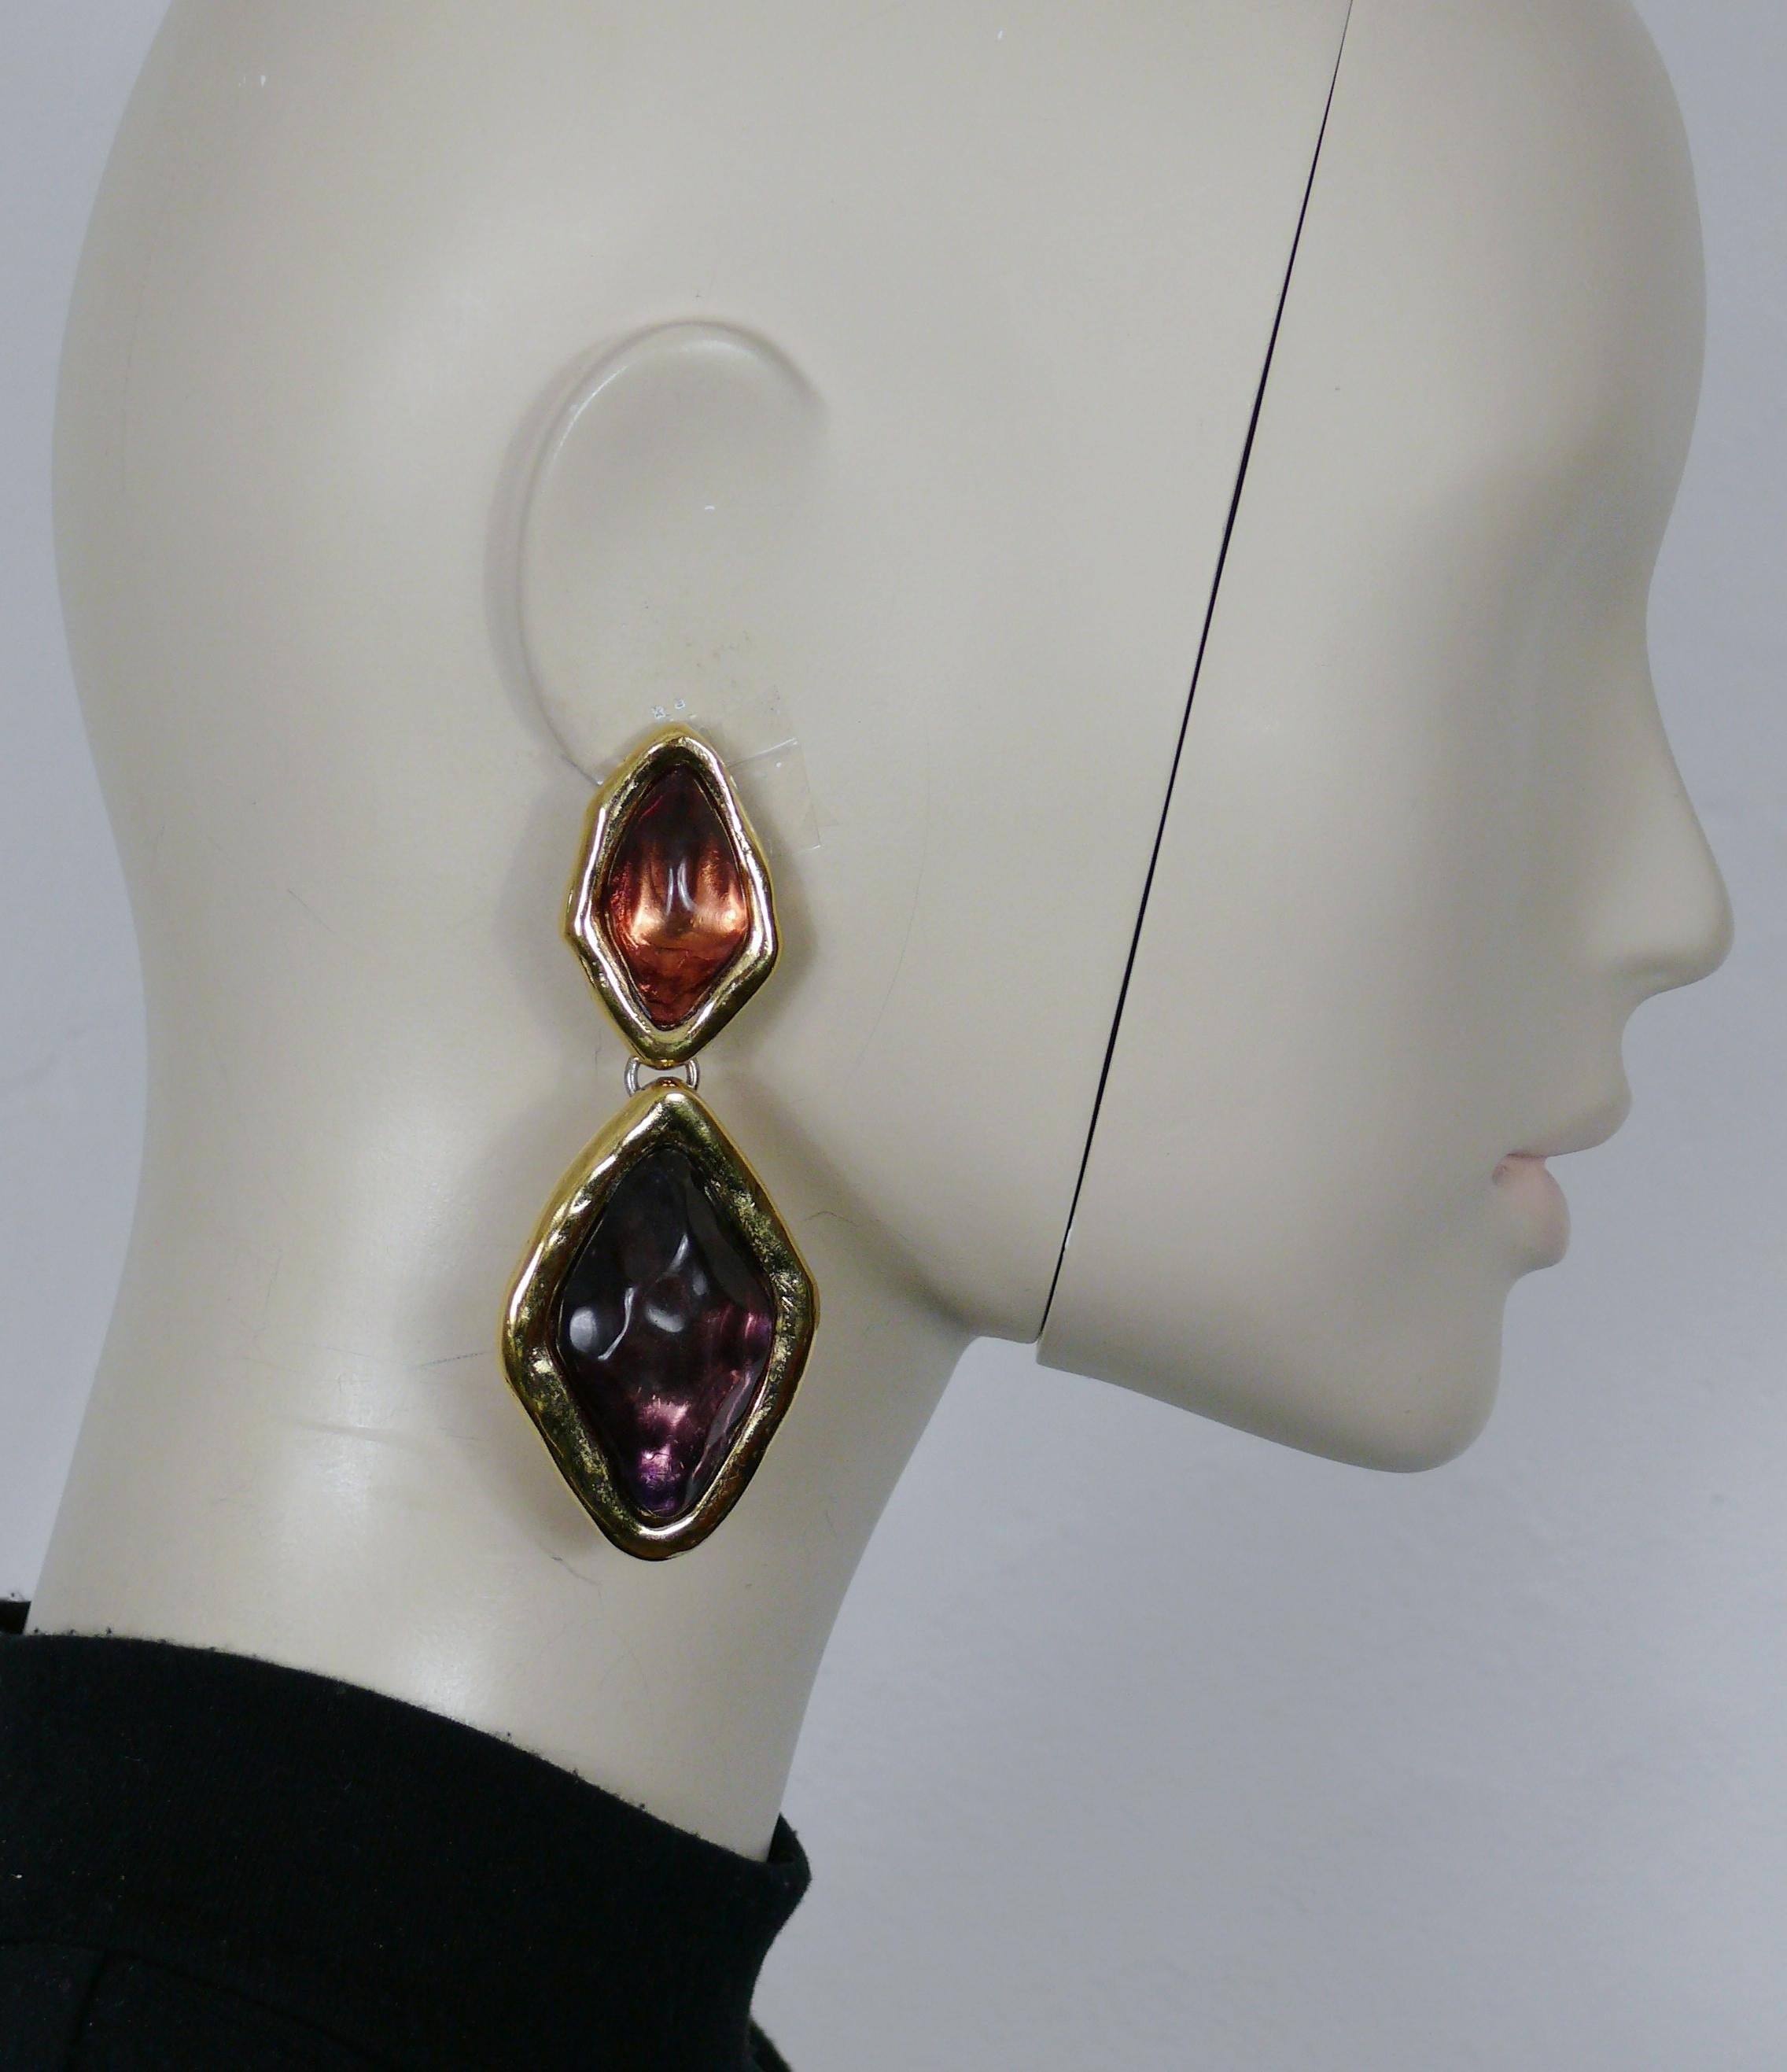 YVES SAINT LAURENT Vintage-Ohrringe in Goldton in Form eines Diamanten (Clip-on), verziert mit violetten Harz-Cabochons (bitte beachten Sie, dass die Farbe des oberen Cabochons etwas anders ist als die des unteren).

Geprägtes YSL.

Ungefähre Maße: